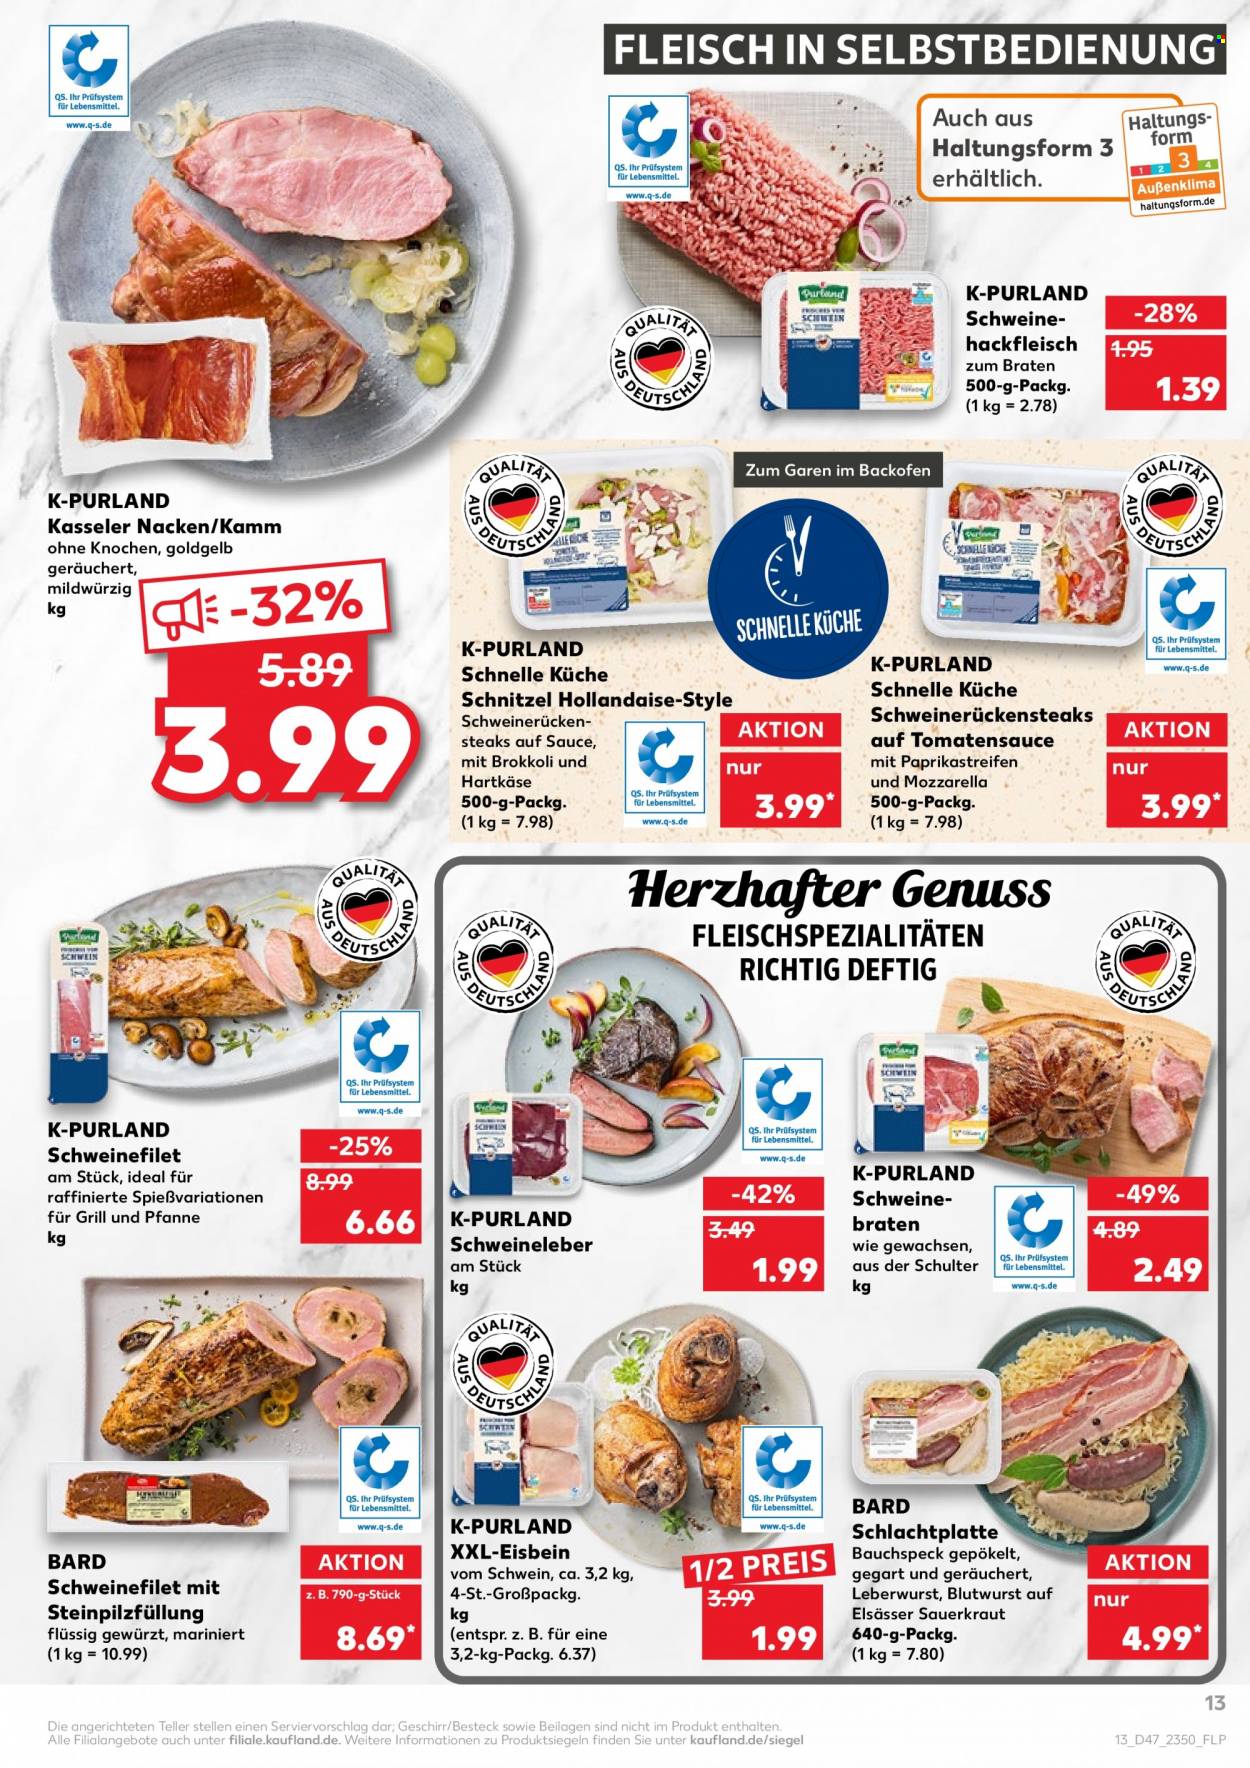 thumbnail - Prospekte Kaufland - 25.11.2021 - 1.12.2021 - Produkte in Aktion - Schnitzel, Steak, Brokkoli, Hackfleisch, Schweinehackfleisch, Schweinefilet, Schweineleber, Wurst, Speck, Leberwurst, Käse, Mozzarella, Hartkäse, Sauerkraut, Soße, Besteck. Seite 17.